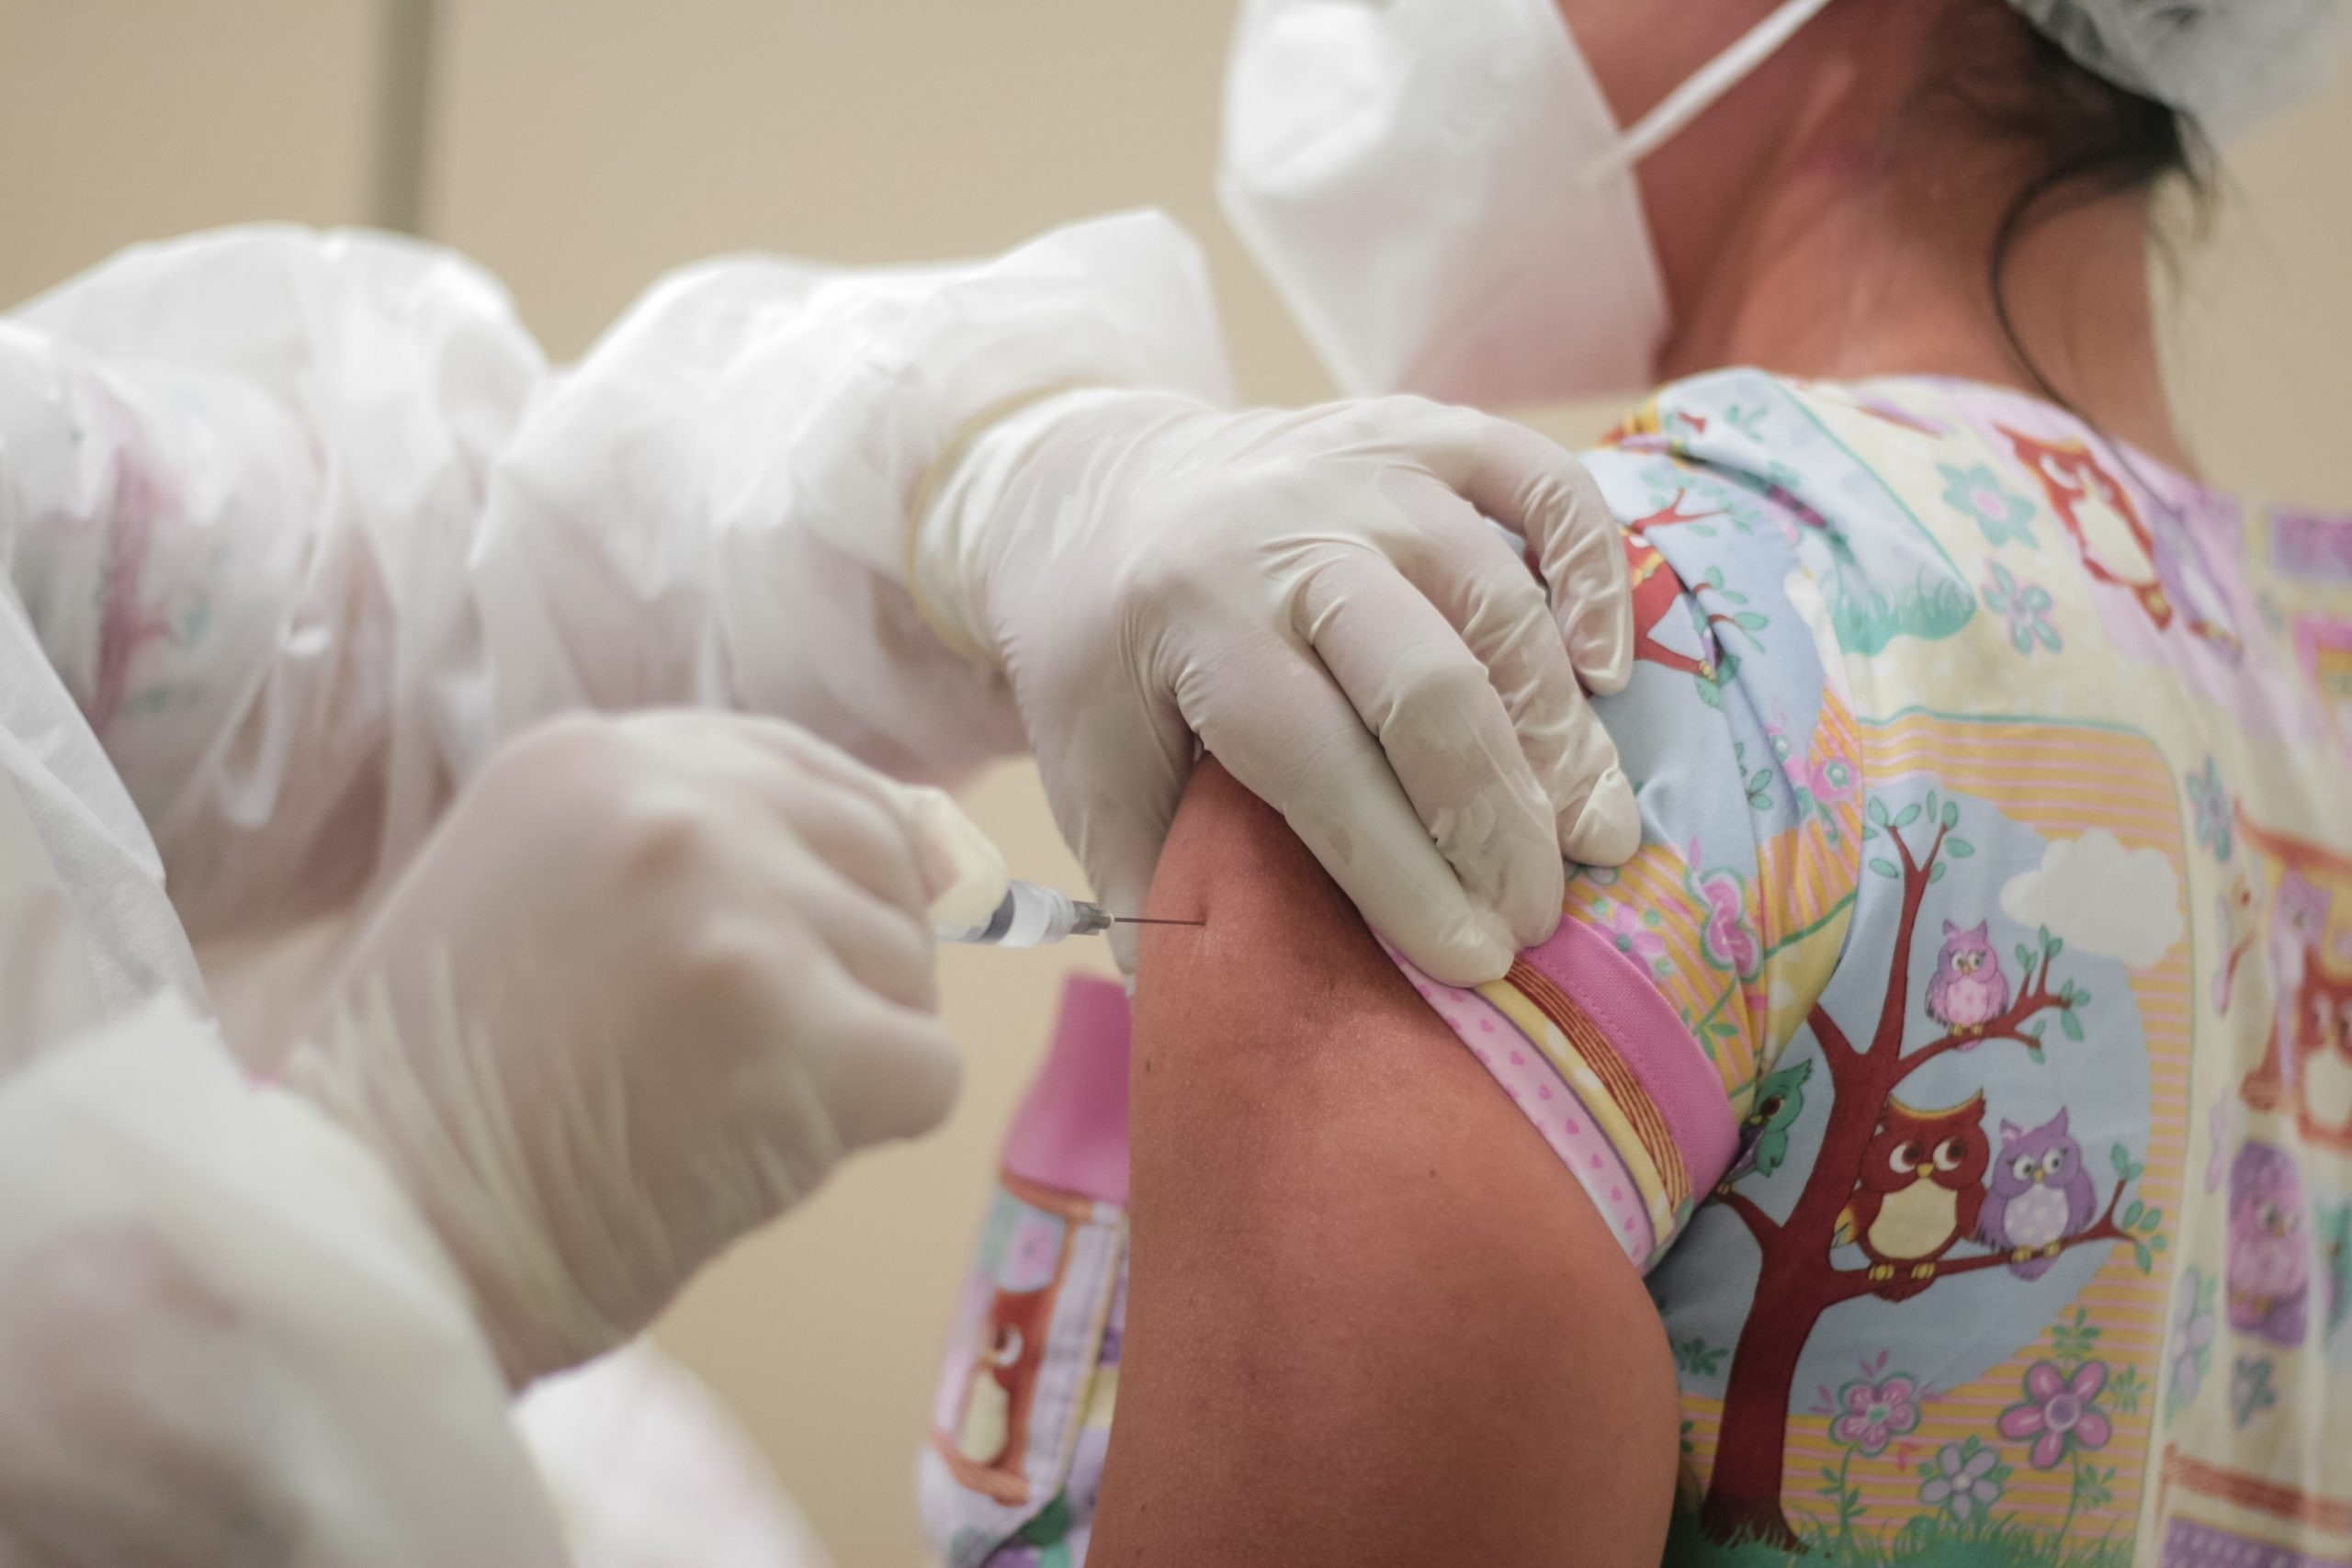 Cerca de 300 pessoas são vacinadas no primeiro dia de imunização contra a Covid-19 em São Pedro da Aldeia